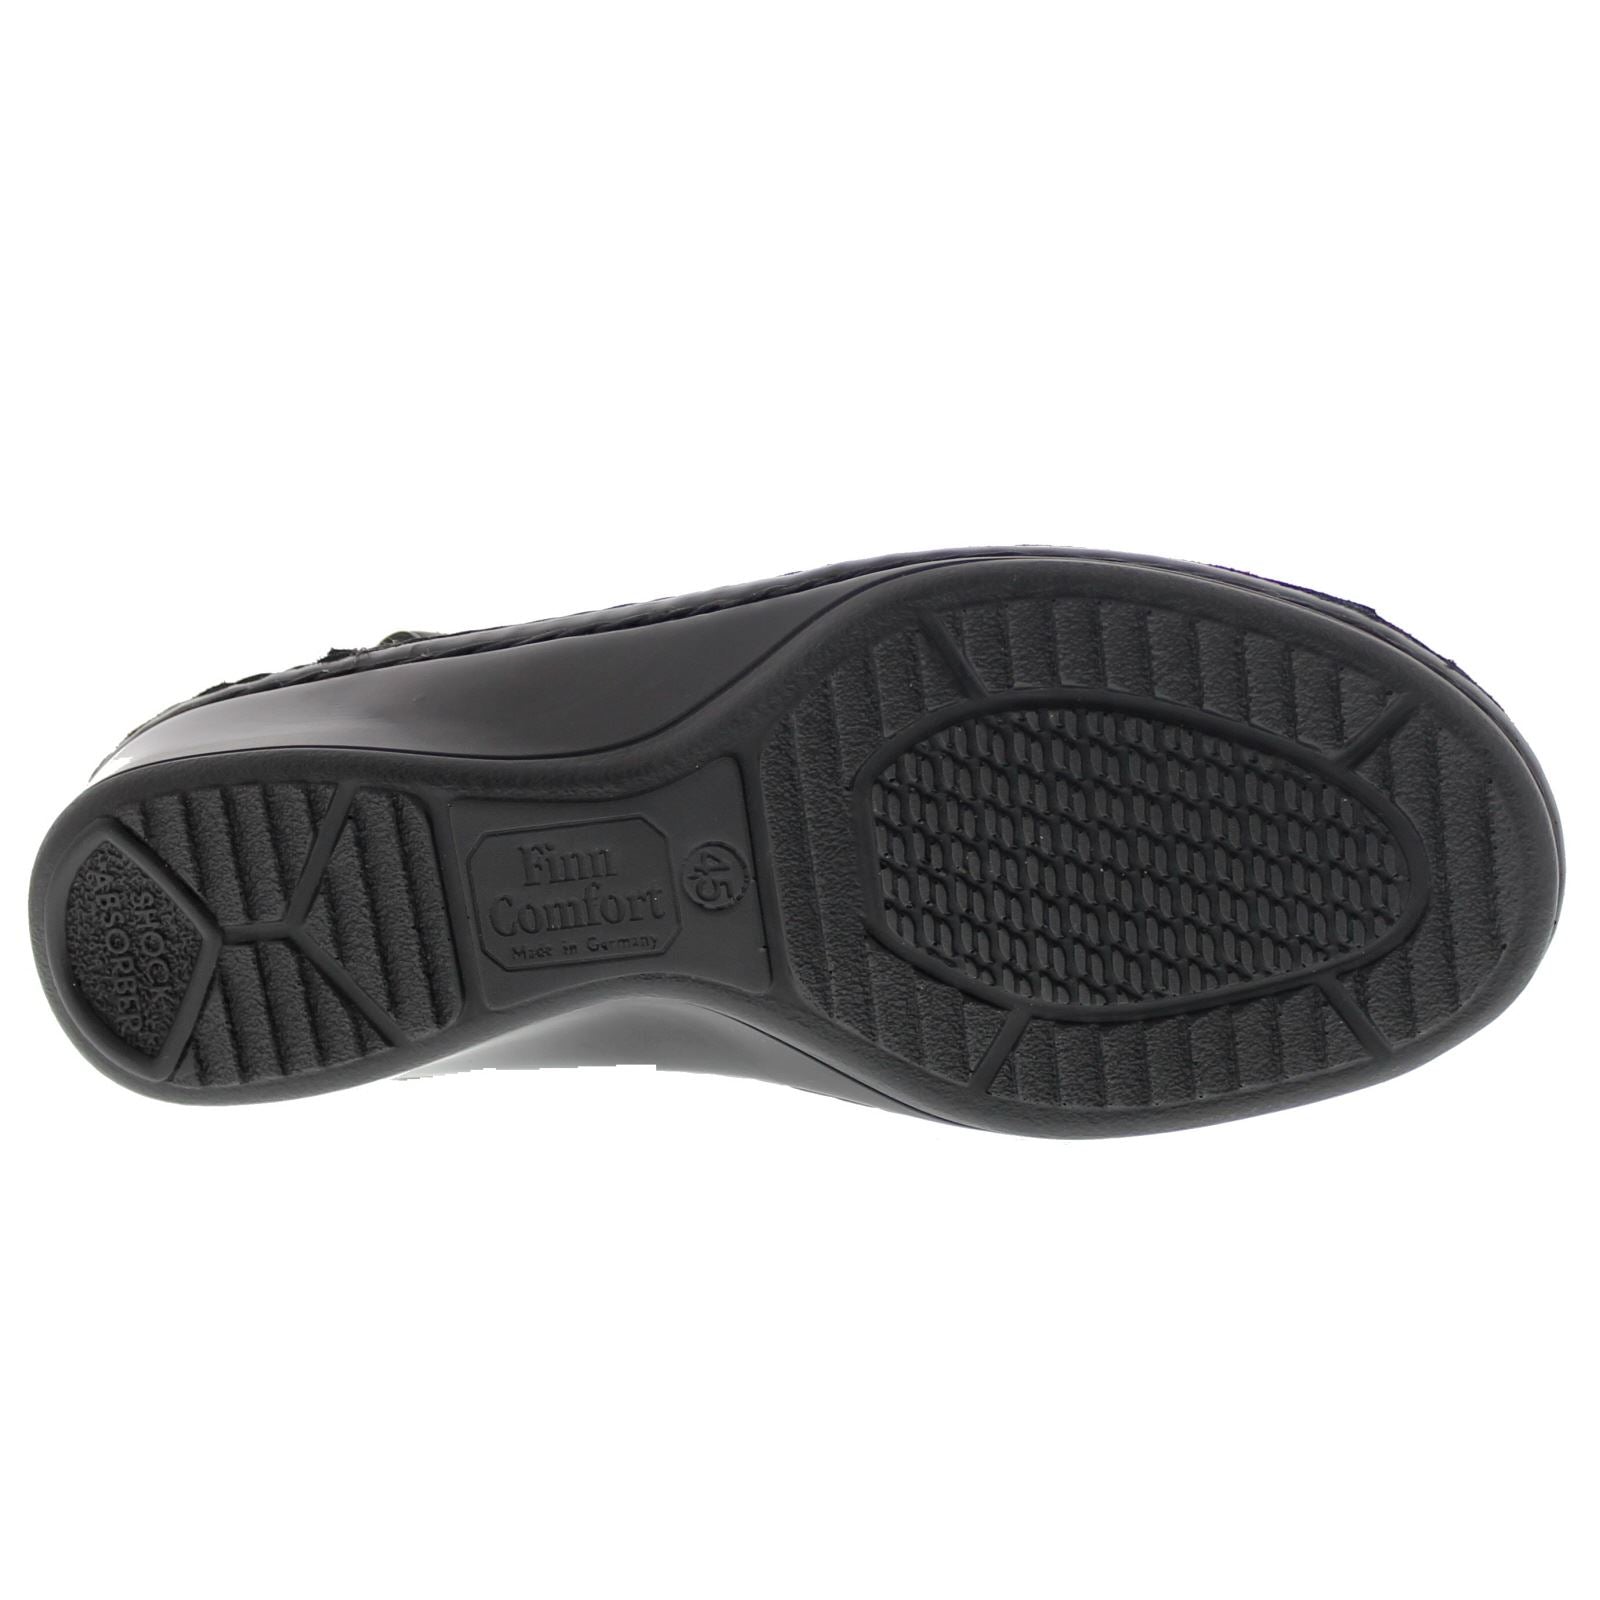 Finn Comfort 2664 Samoa Nappaseda Black Womens Sandals - UK 6